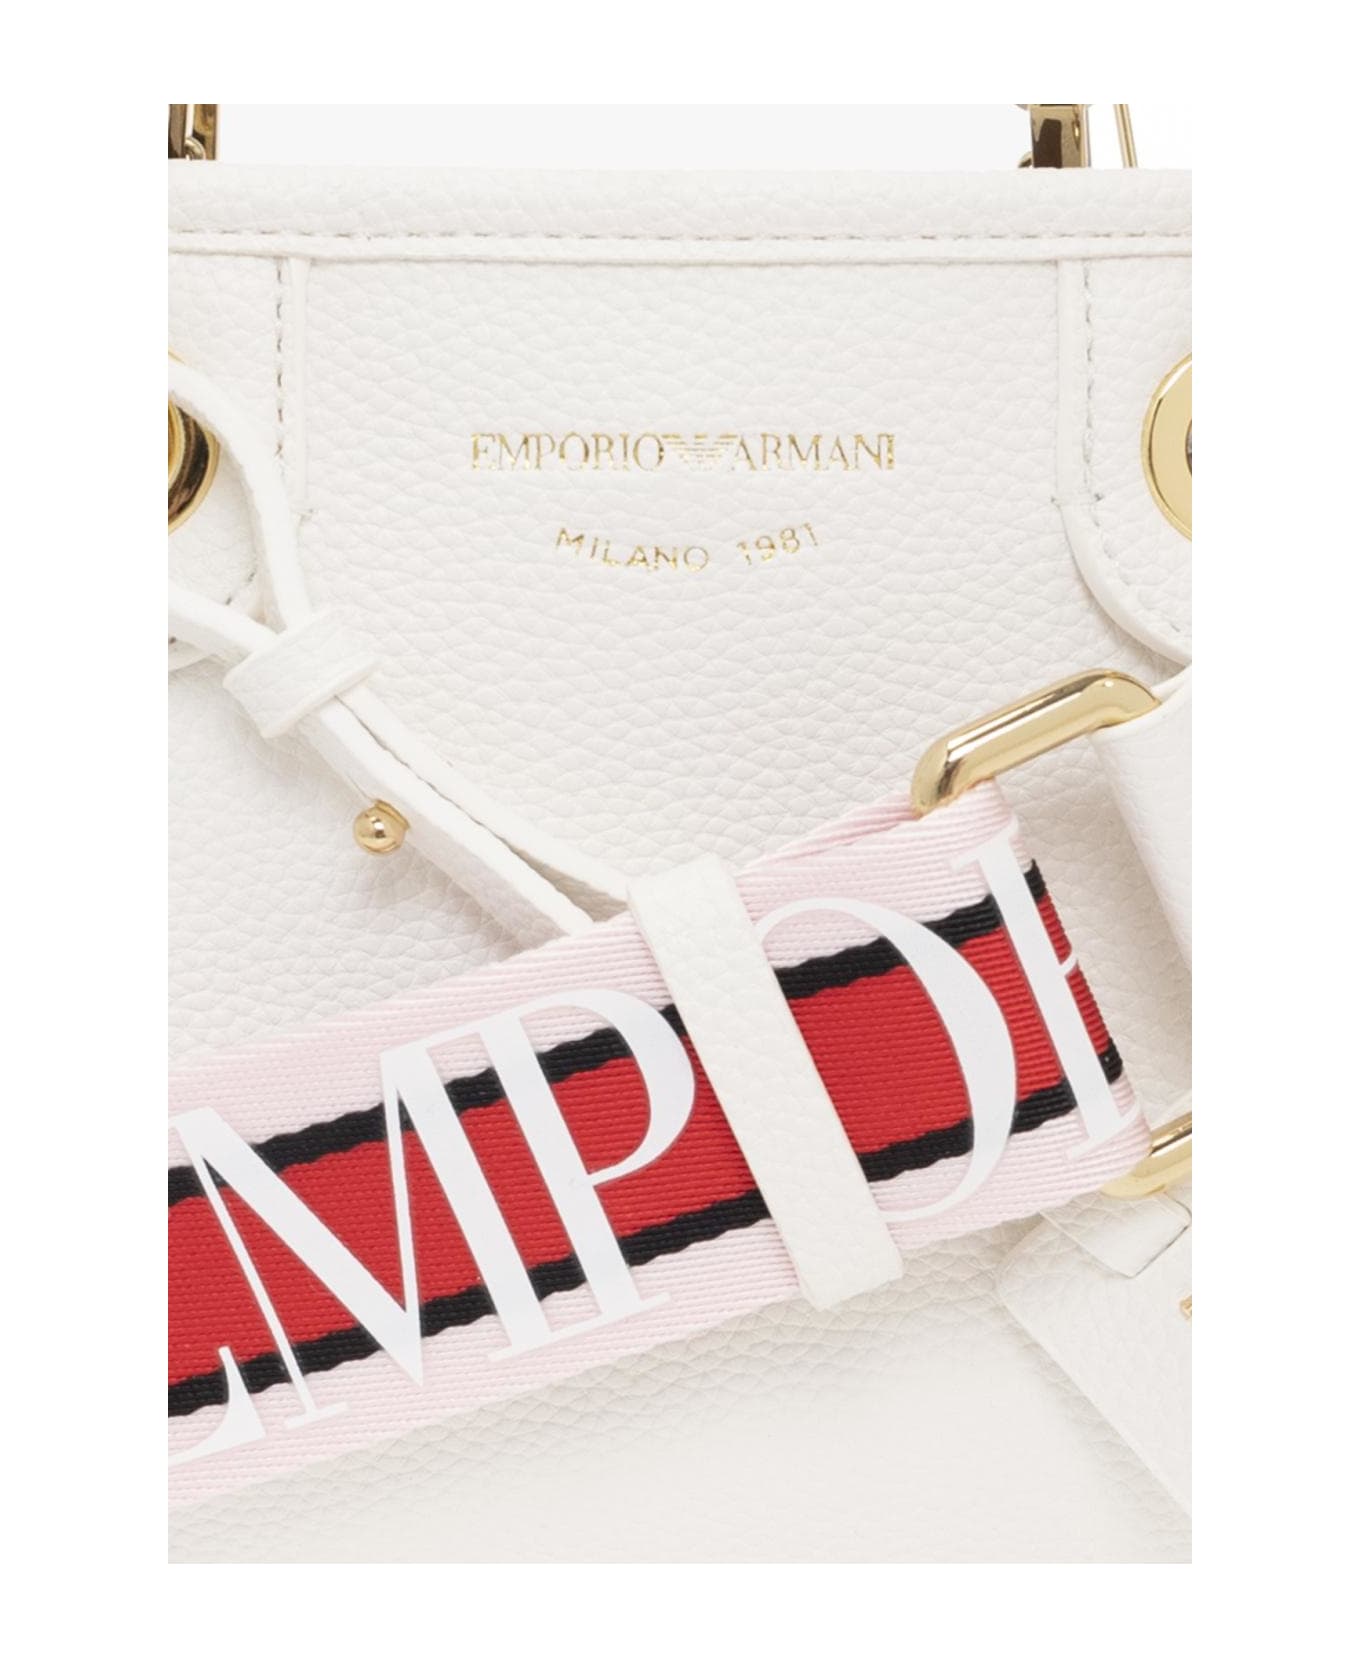 Emporio Armani 'myea Mini' Shoulder Bag - Bianco/cuoio